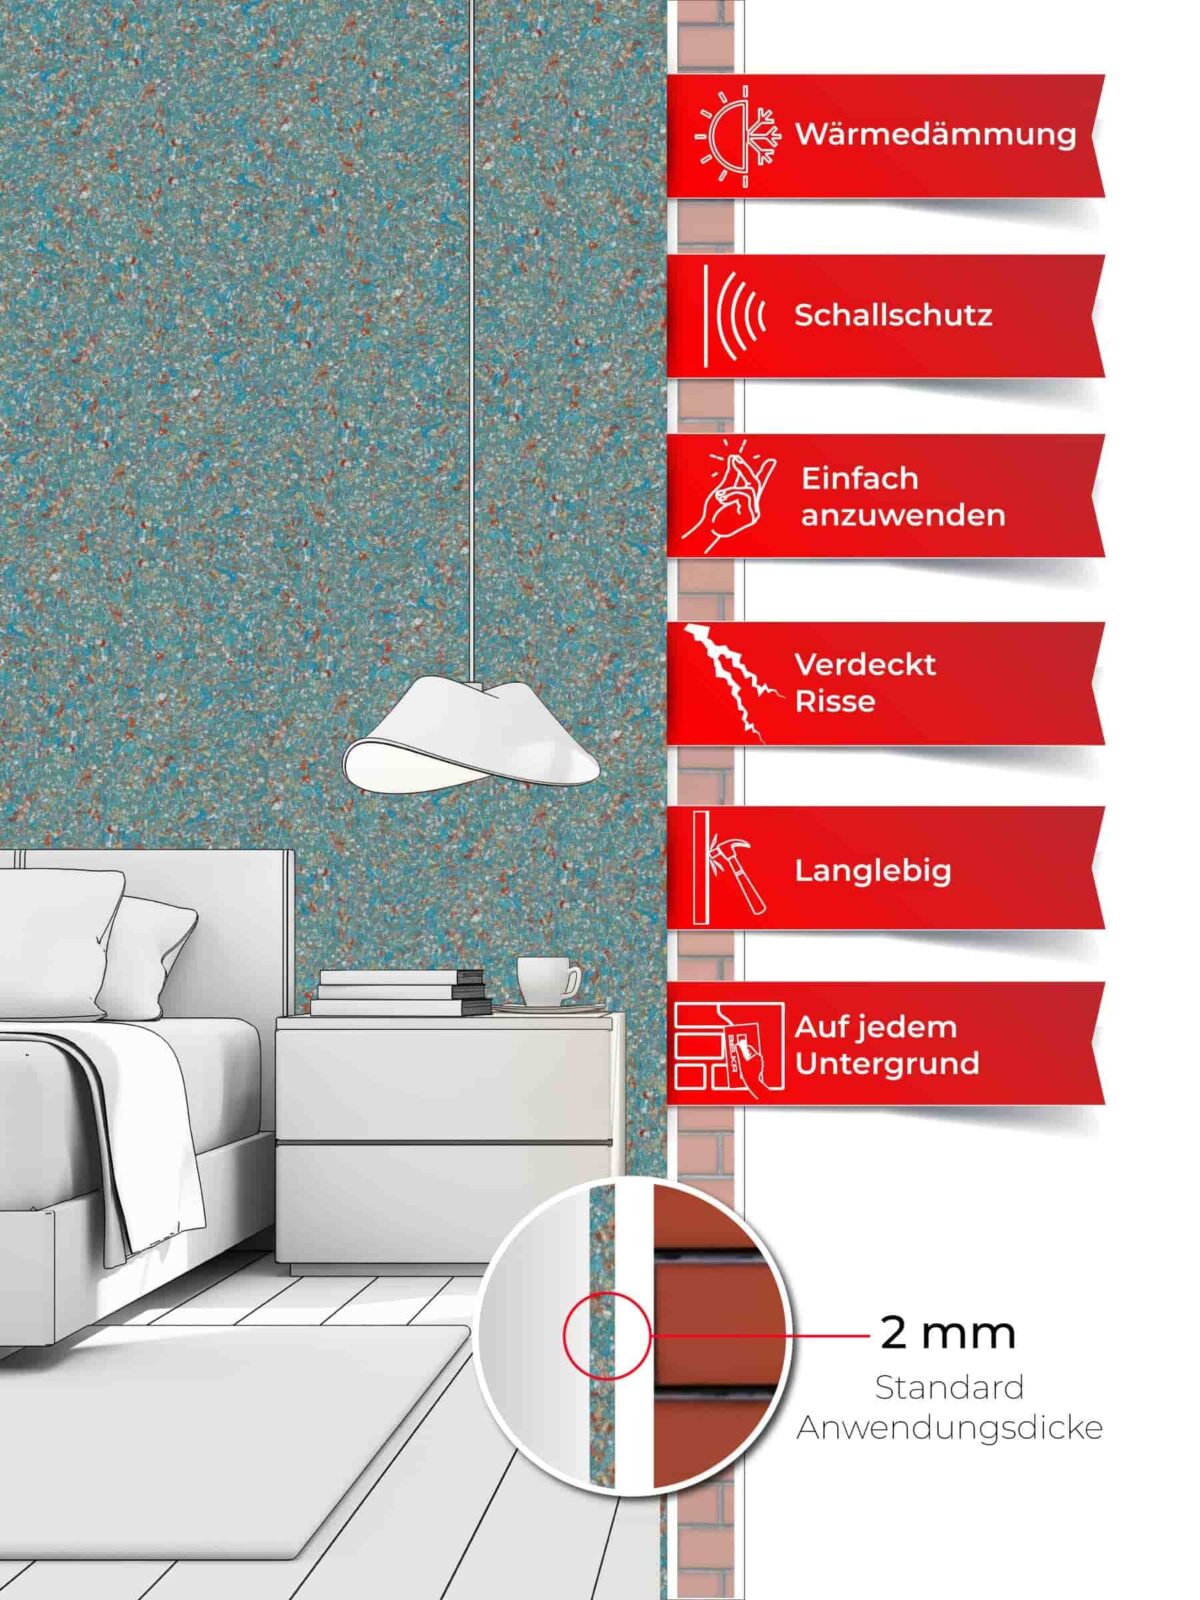 Ein Schlafzimmer, dessen Wände mit Belka Tapete Retro tapeziert sind. Produktmerkmale auf sechs roten Etiketten.